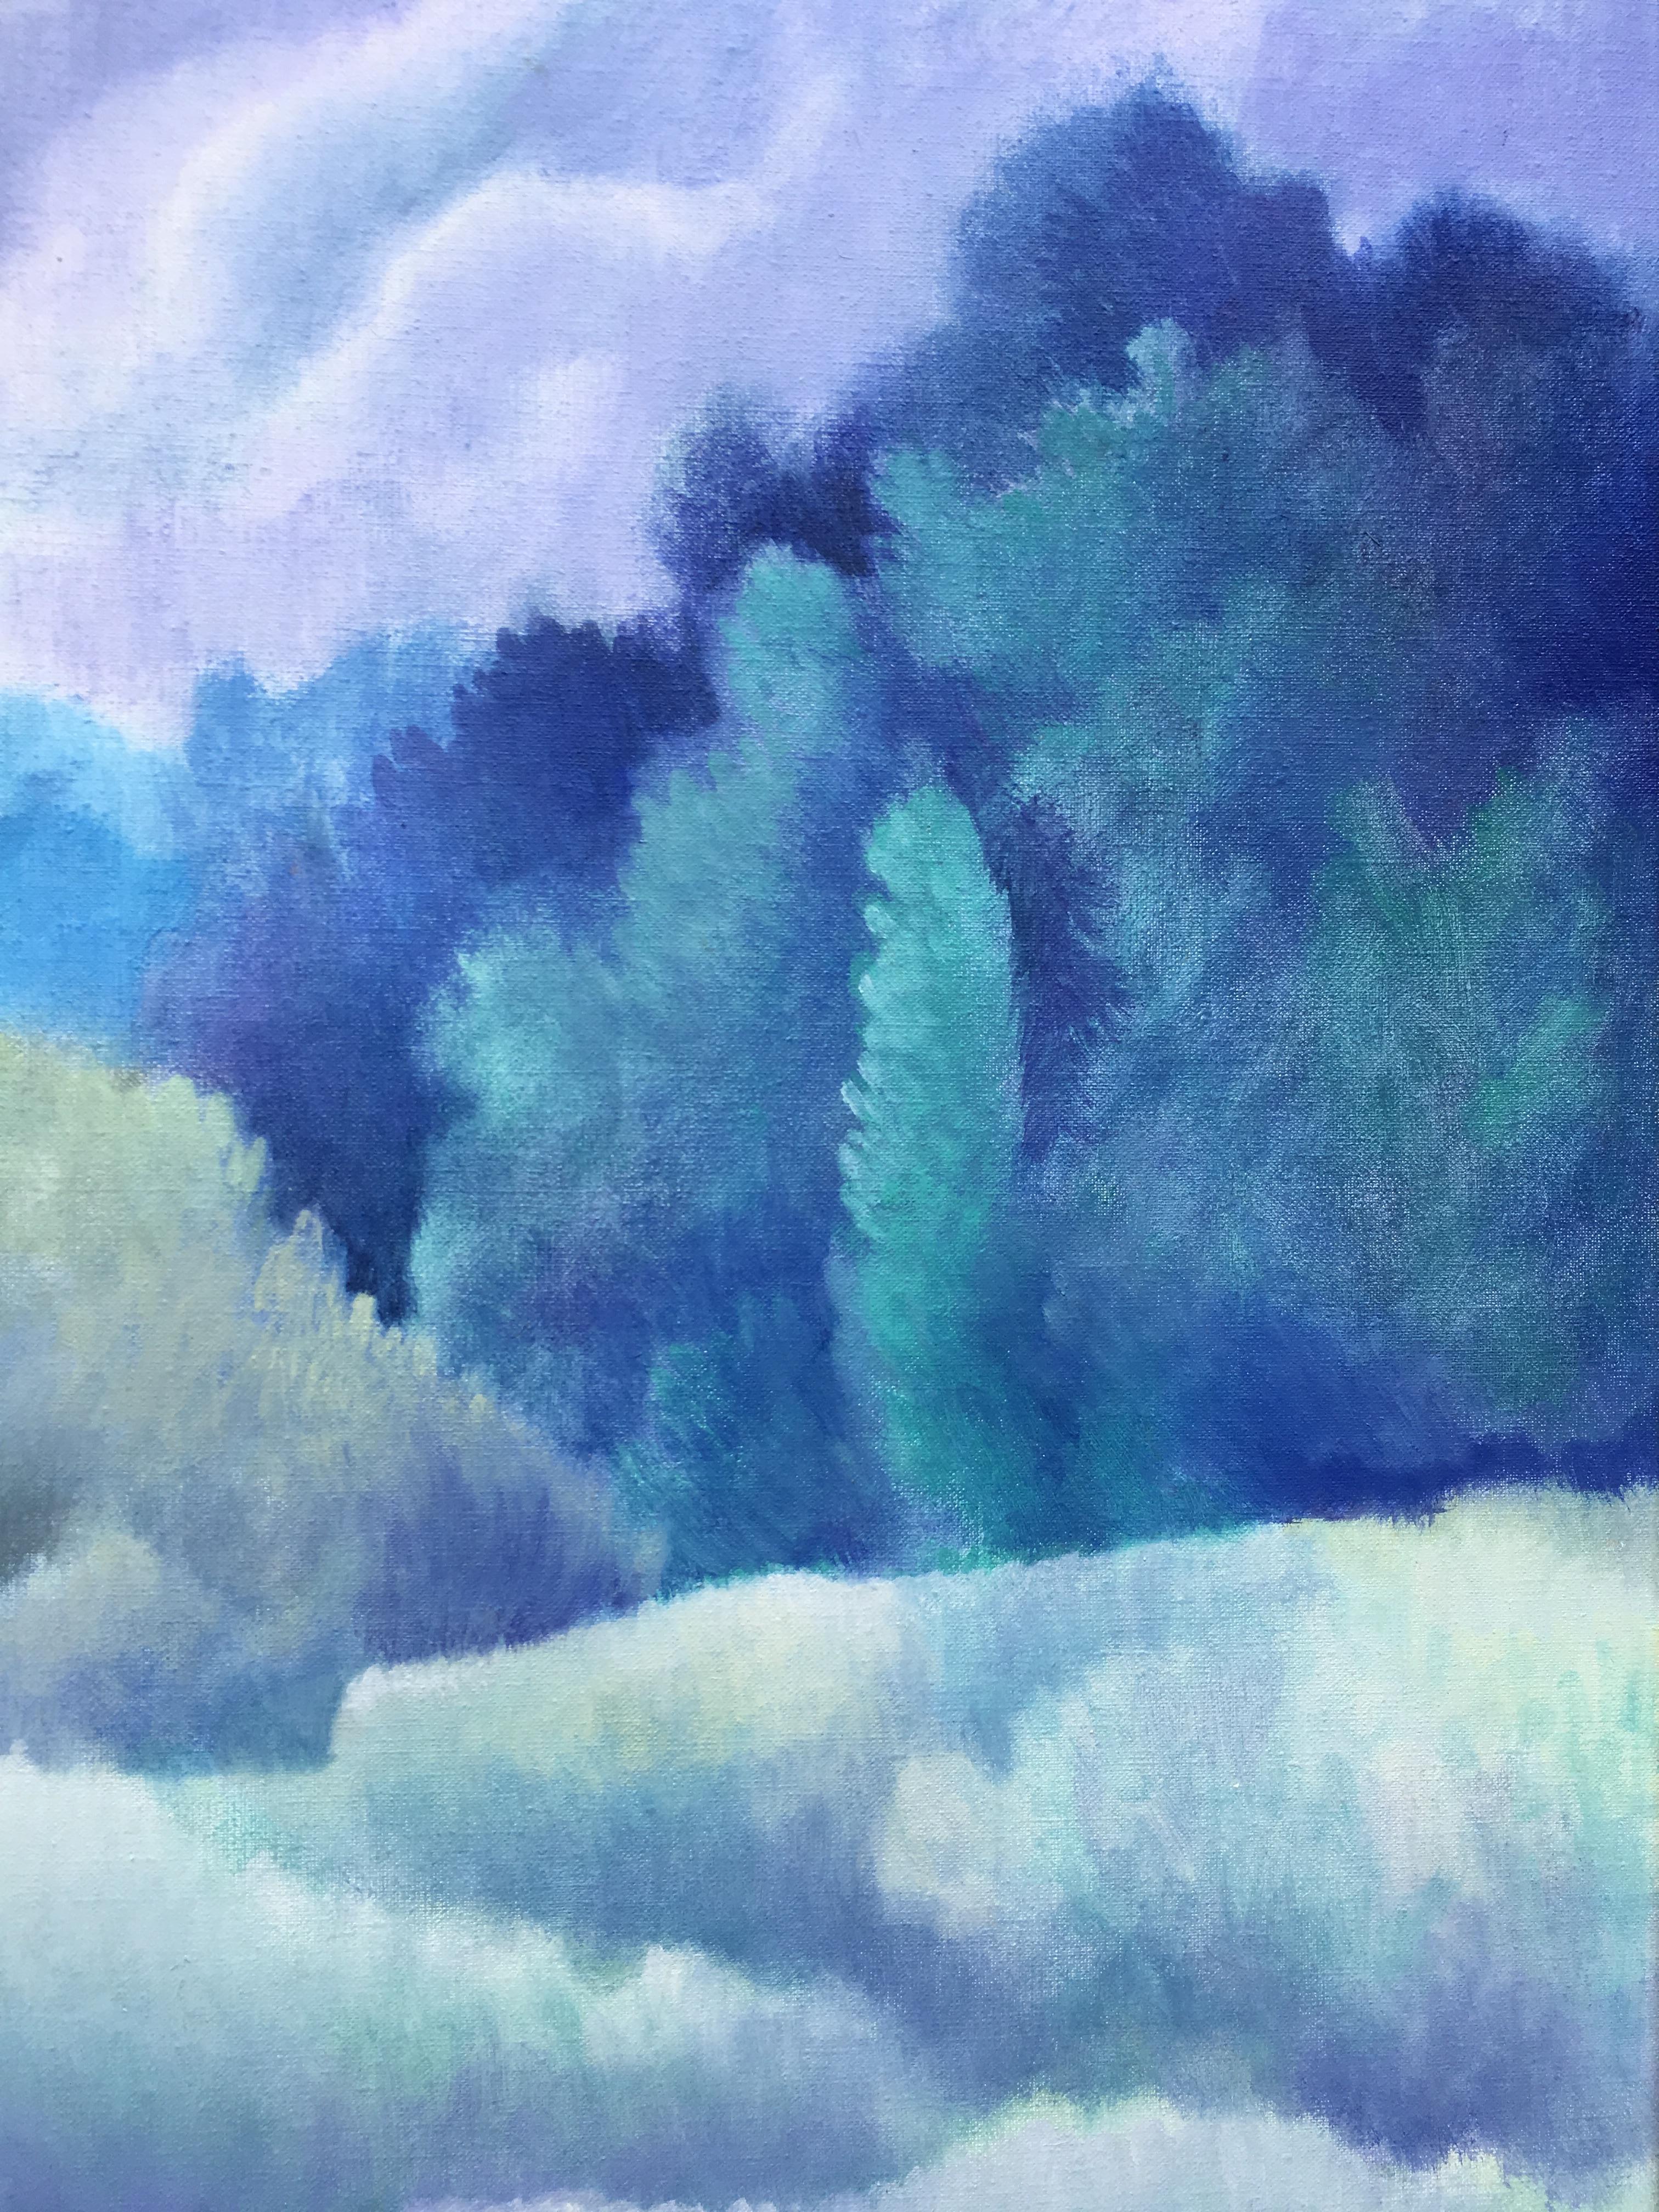 Blue dreams. Cloudy landscape in blue. Oil/canvas Sheila Querre Romantic style 5